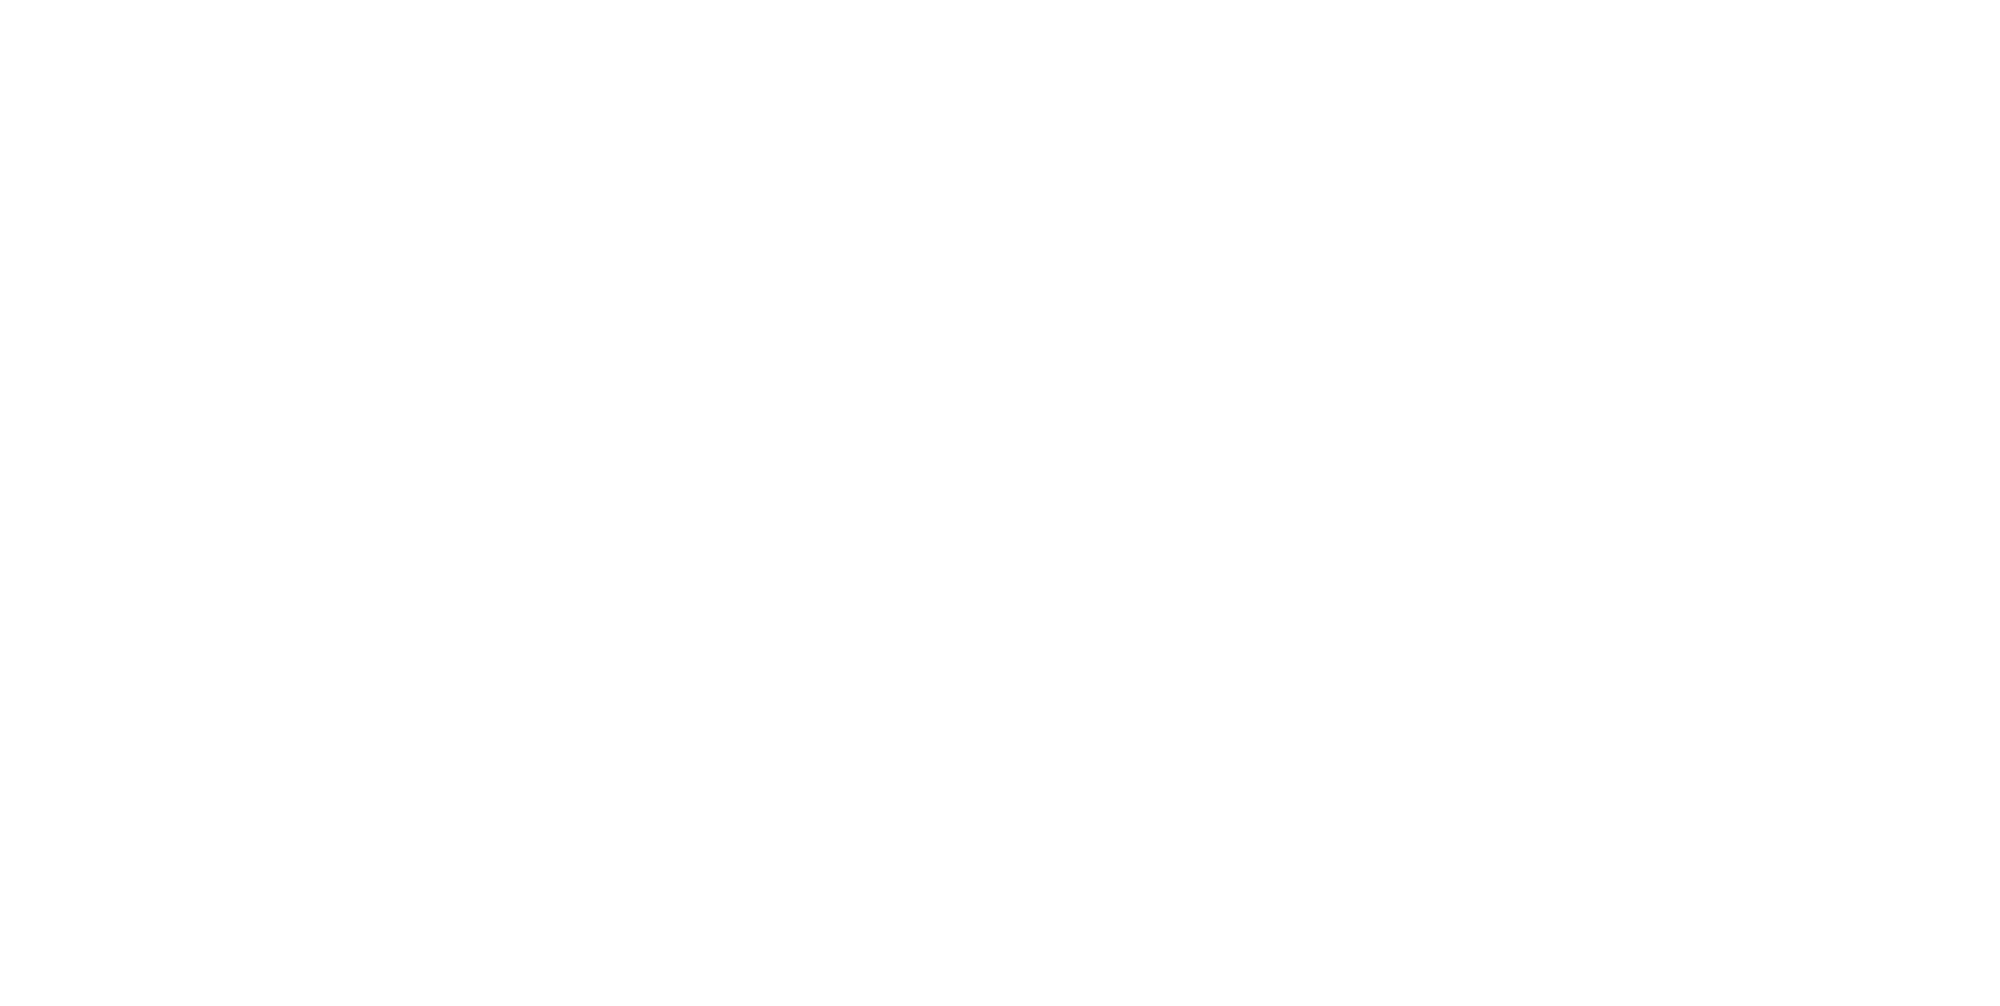 SSADA / Liste des membres de l'équipe SSADA.